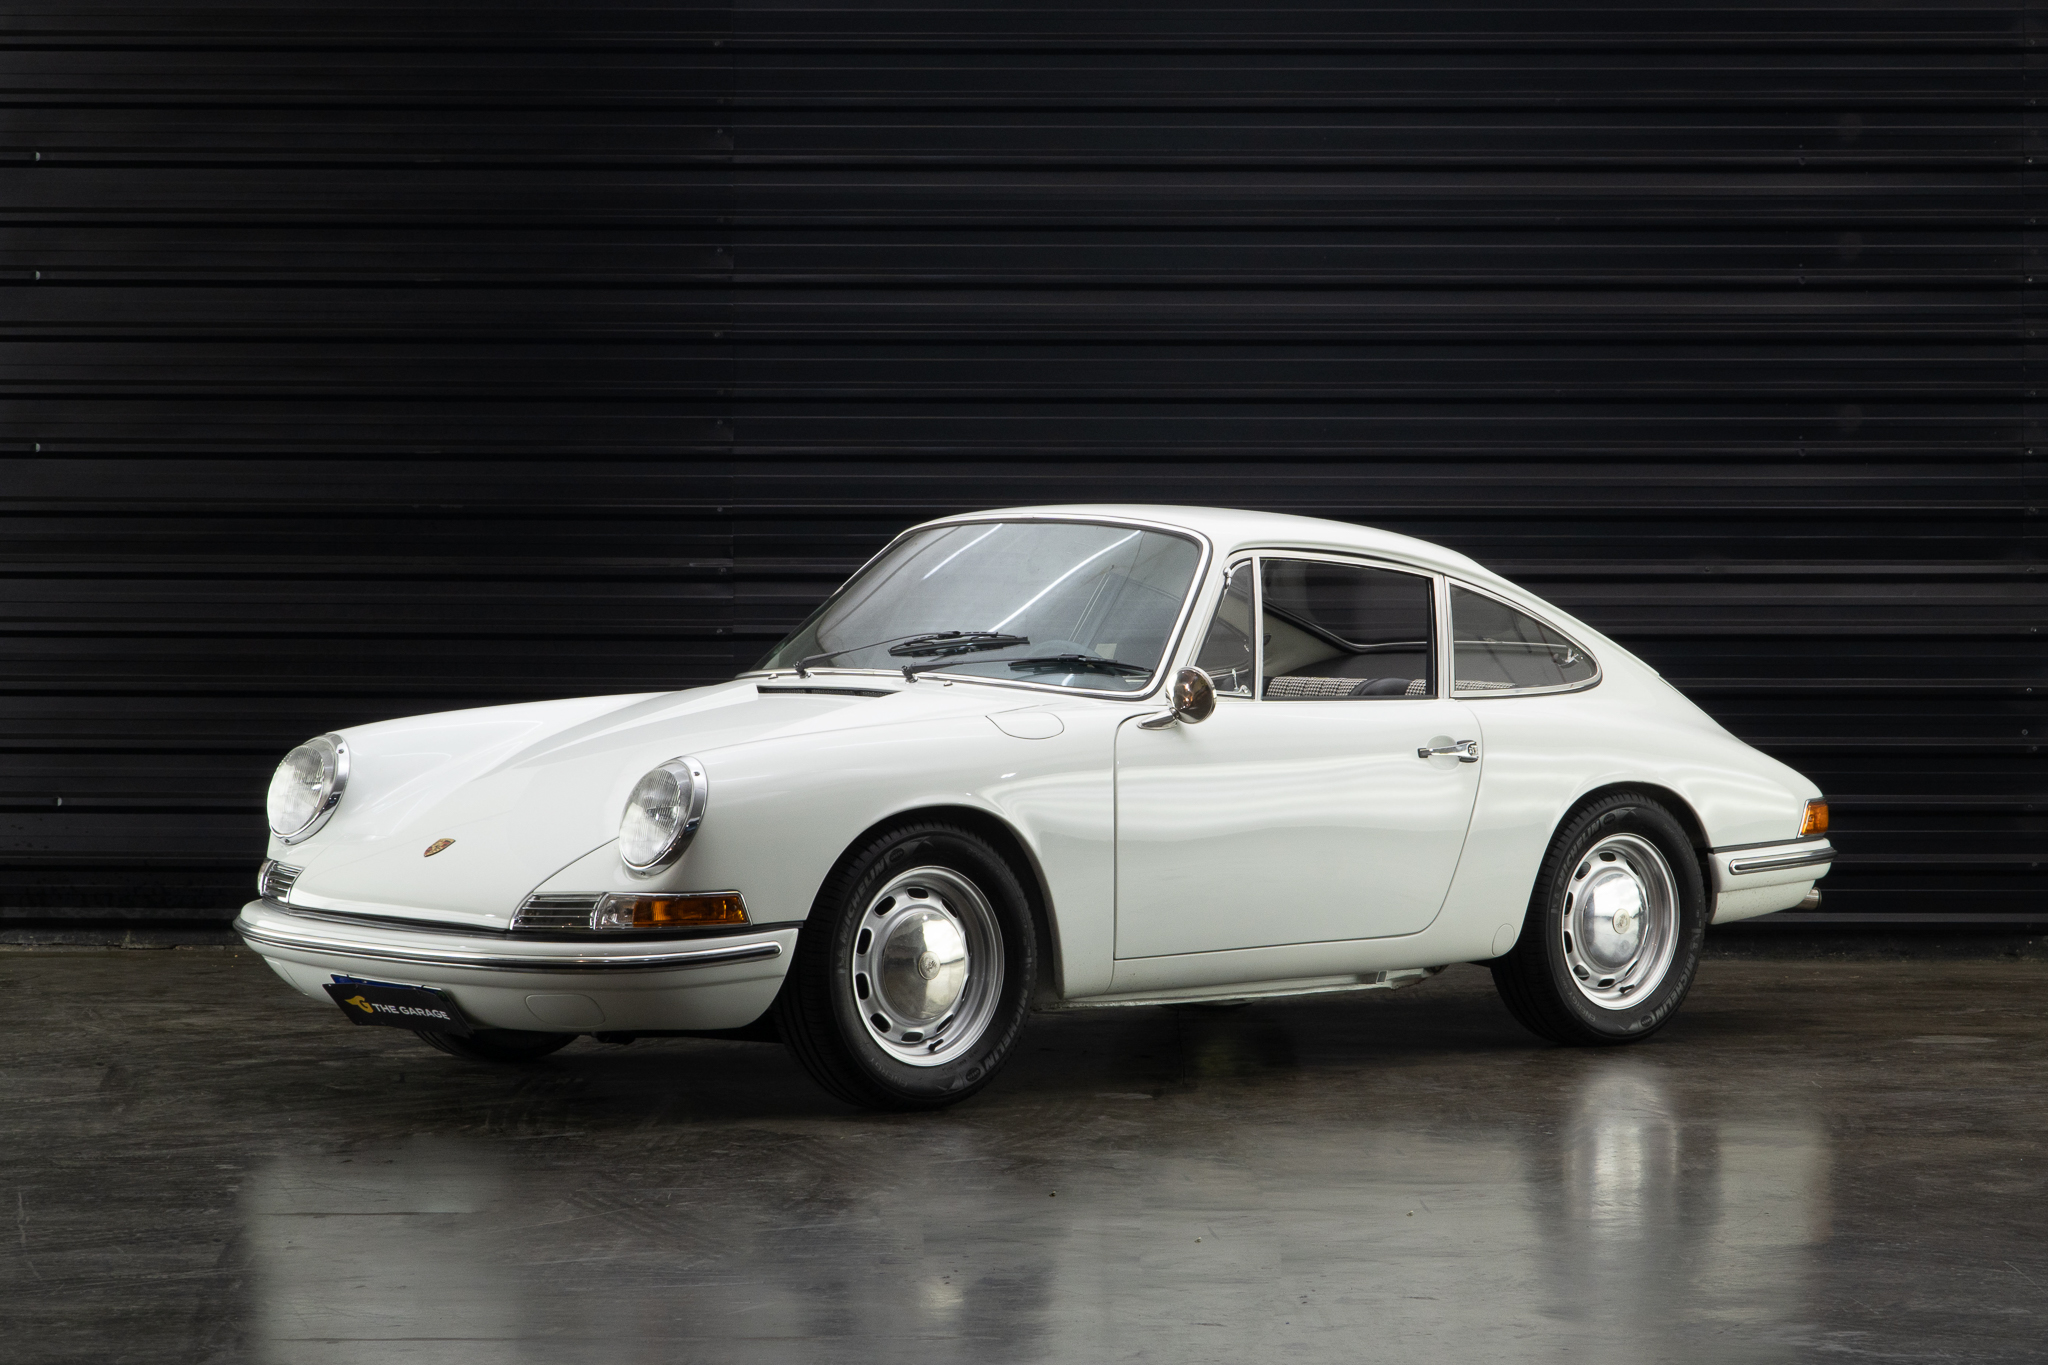 1968 Porsche 912 a venda for sale the garage